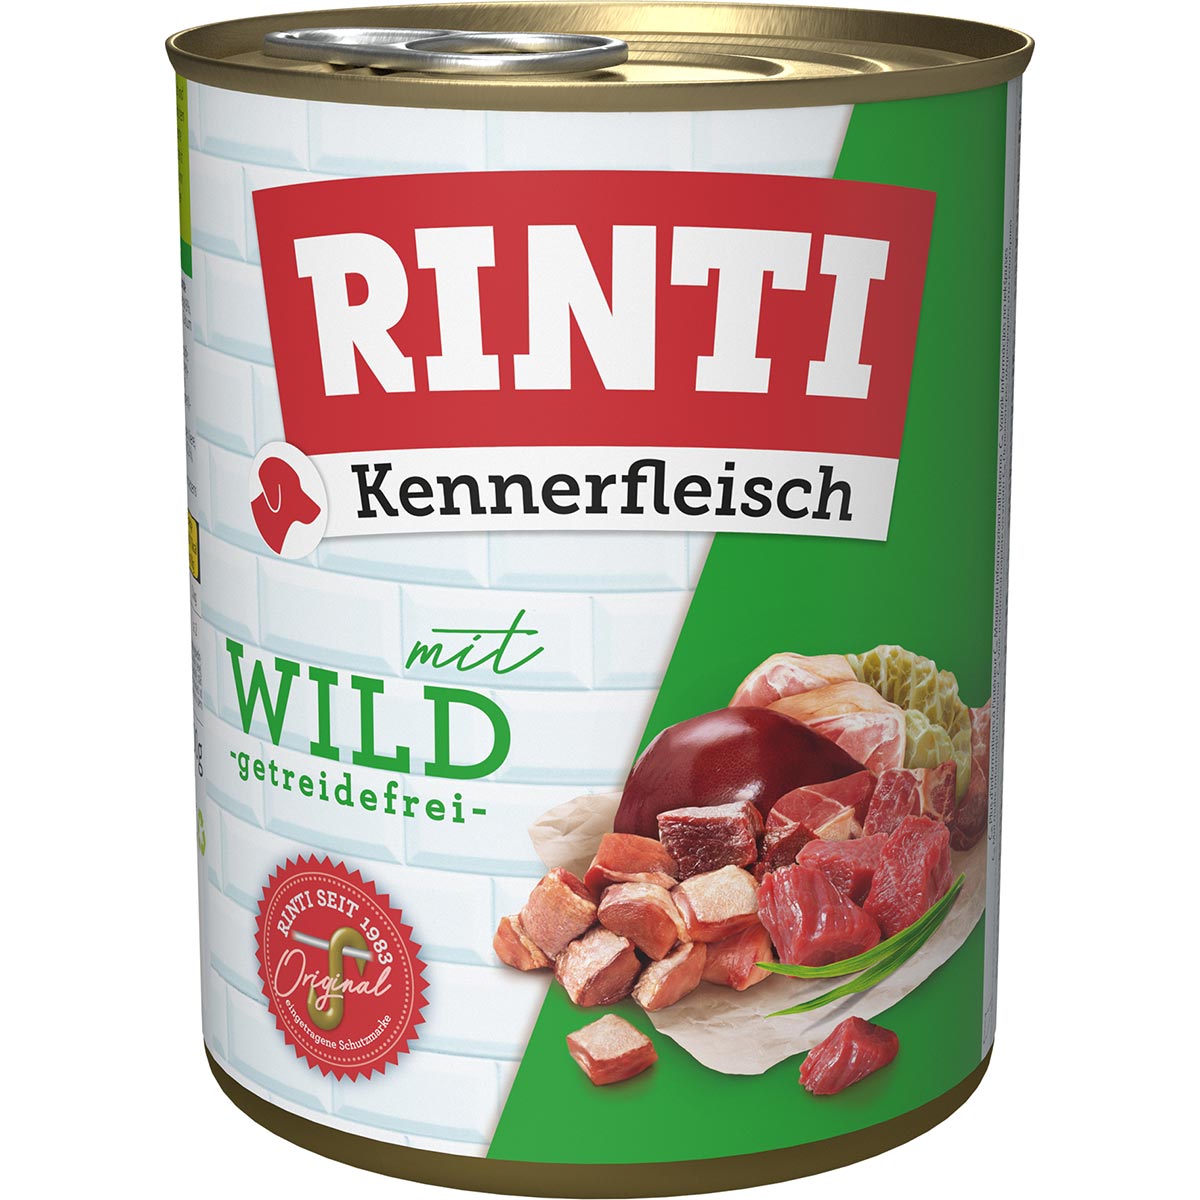 Rinti Kennerfleisch Wild 12x800g